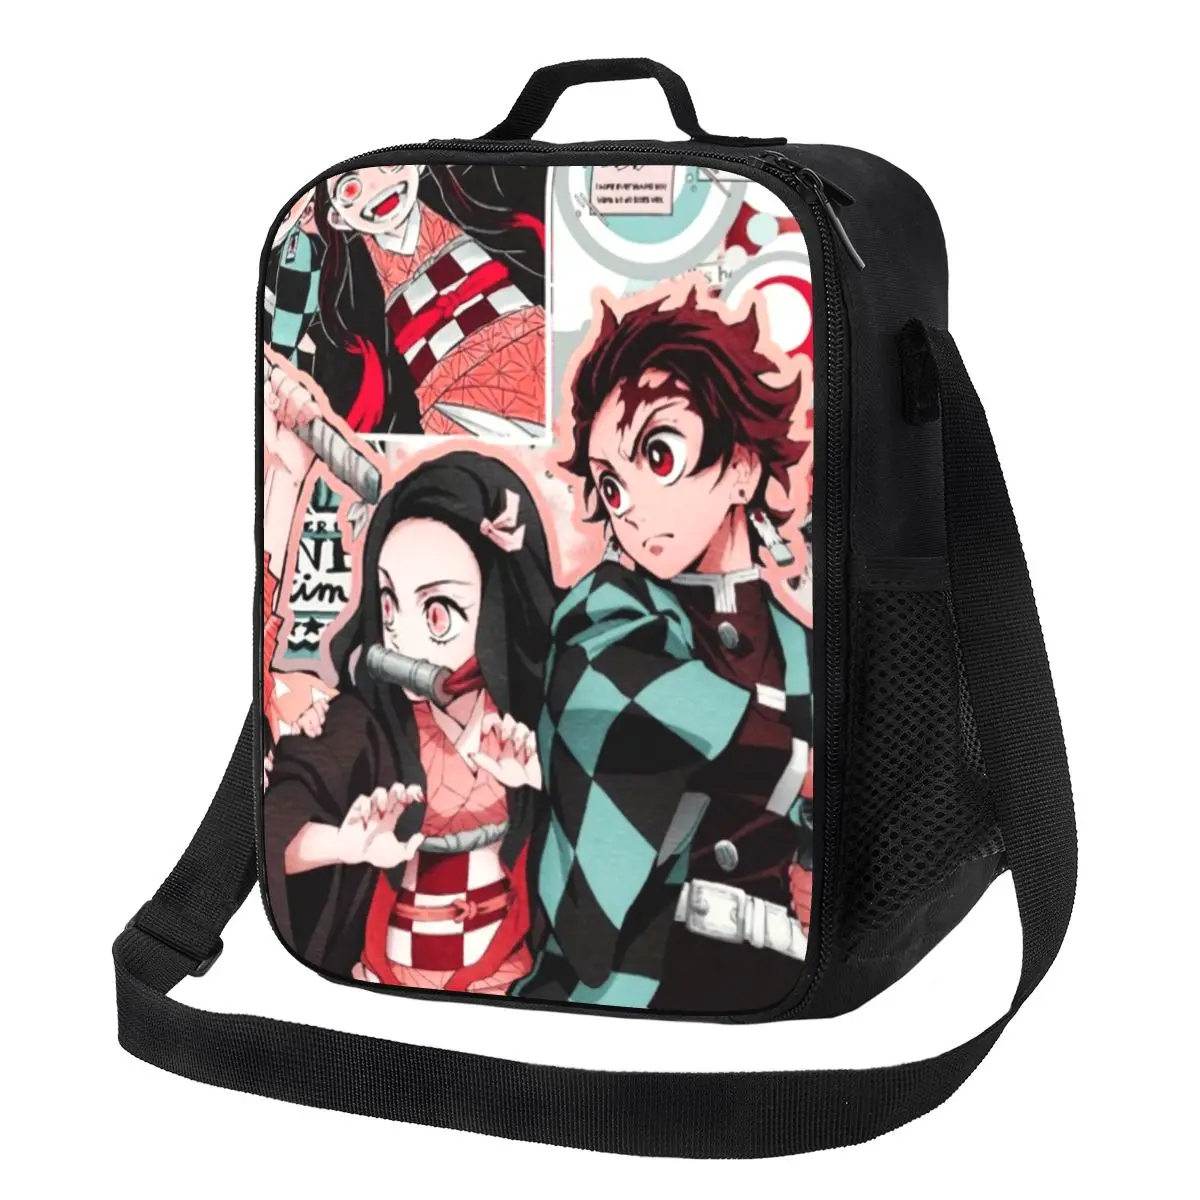 

Изолированная сумка-тоут Kimetsu No Yaiba для обеда с рассеивателем демонов, сумка для аниме манги, портативный охладитель, термоконтейнер для еды, детский школьный Ланч-бокс